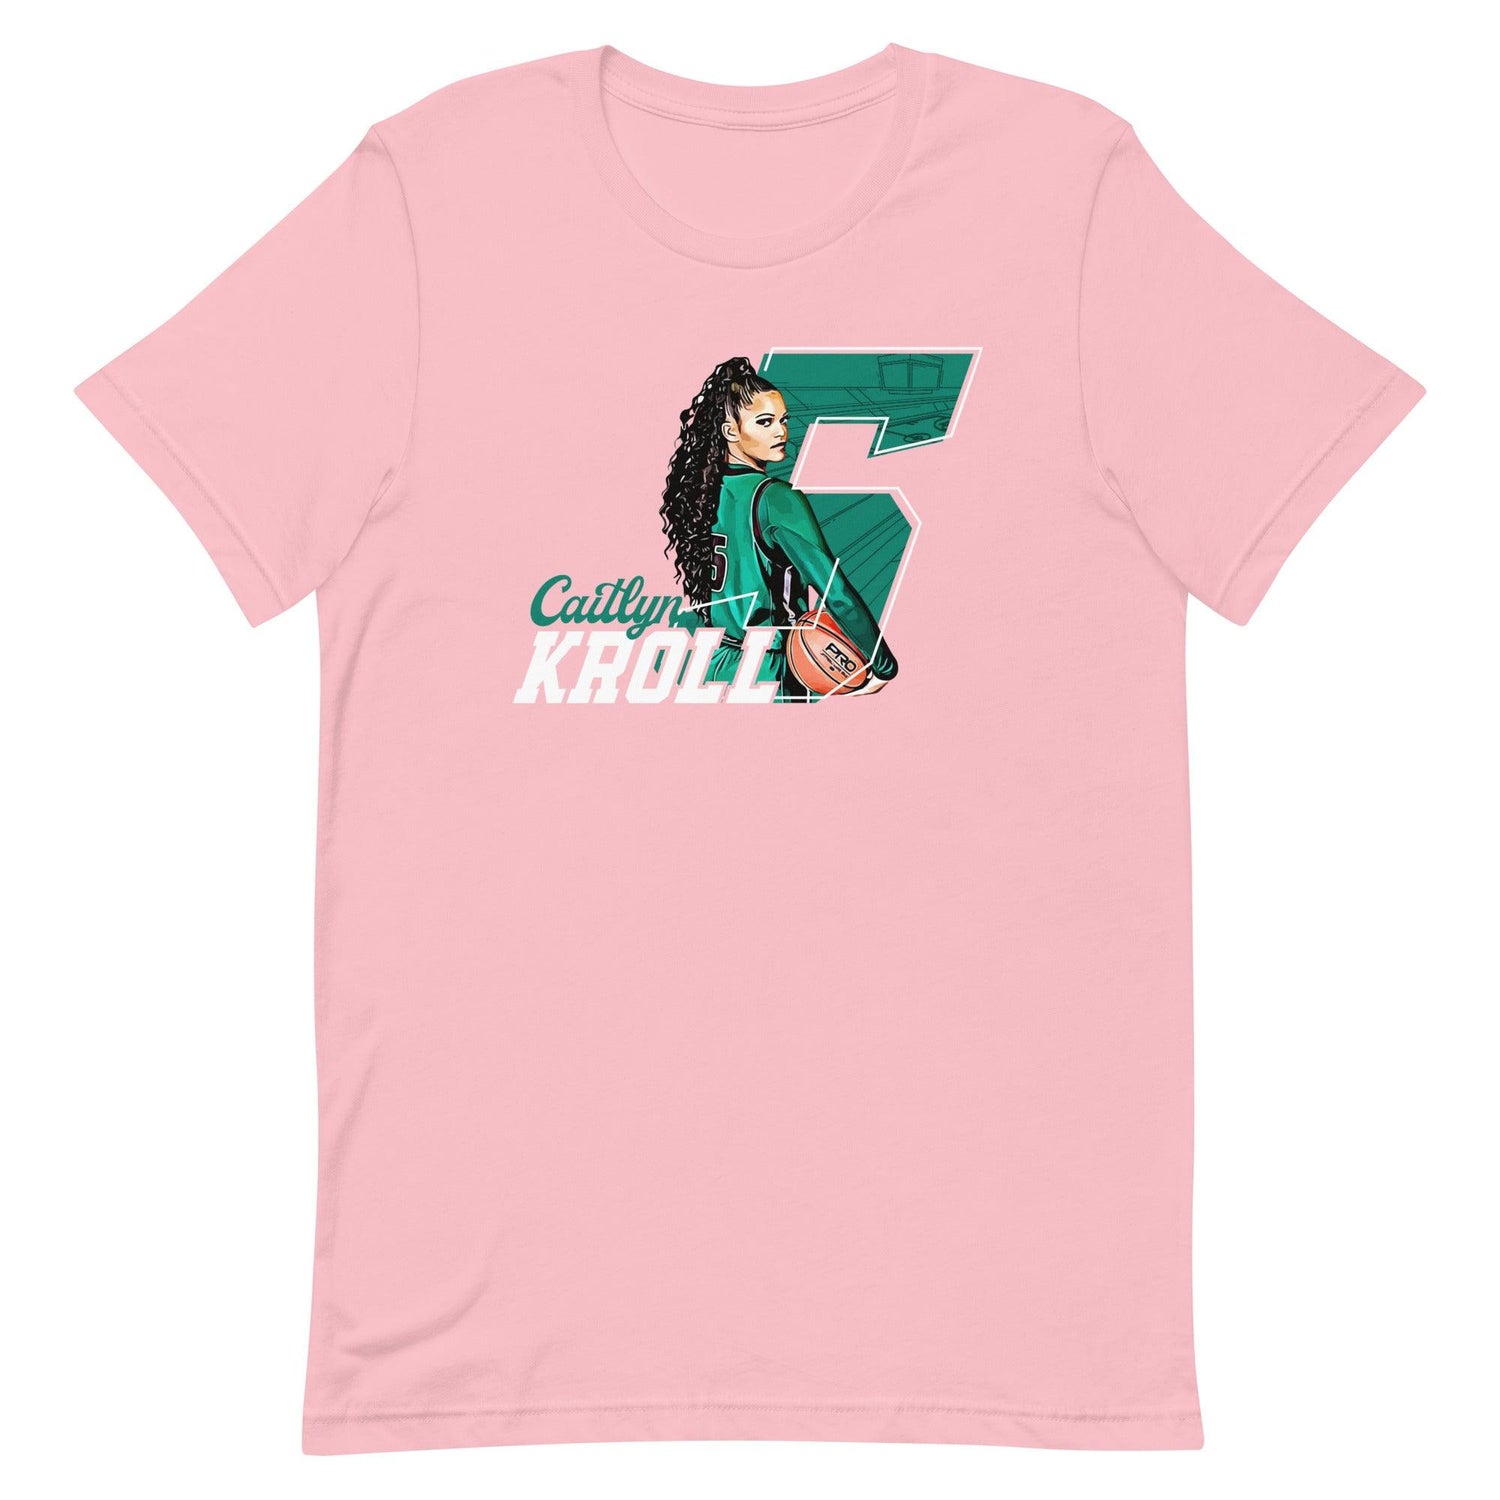 Caitlyn Kroll "Gameday" t-shirt - Fan Arch